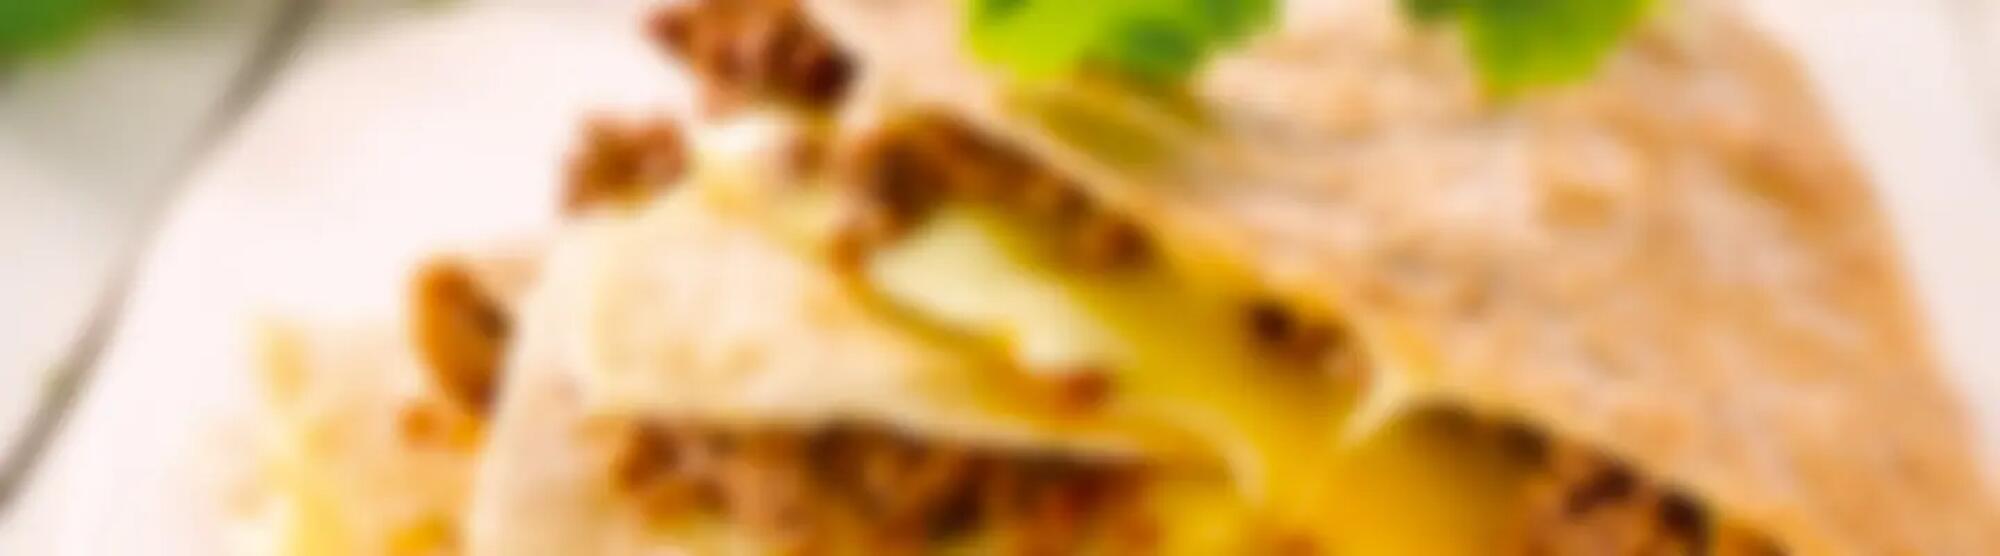 Recette : Quesadillas au fromage à raclette